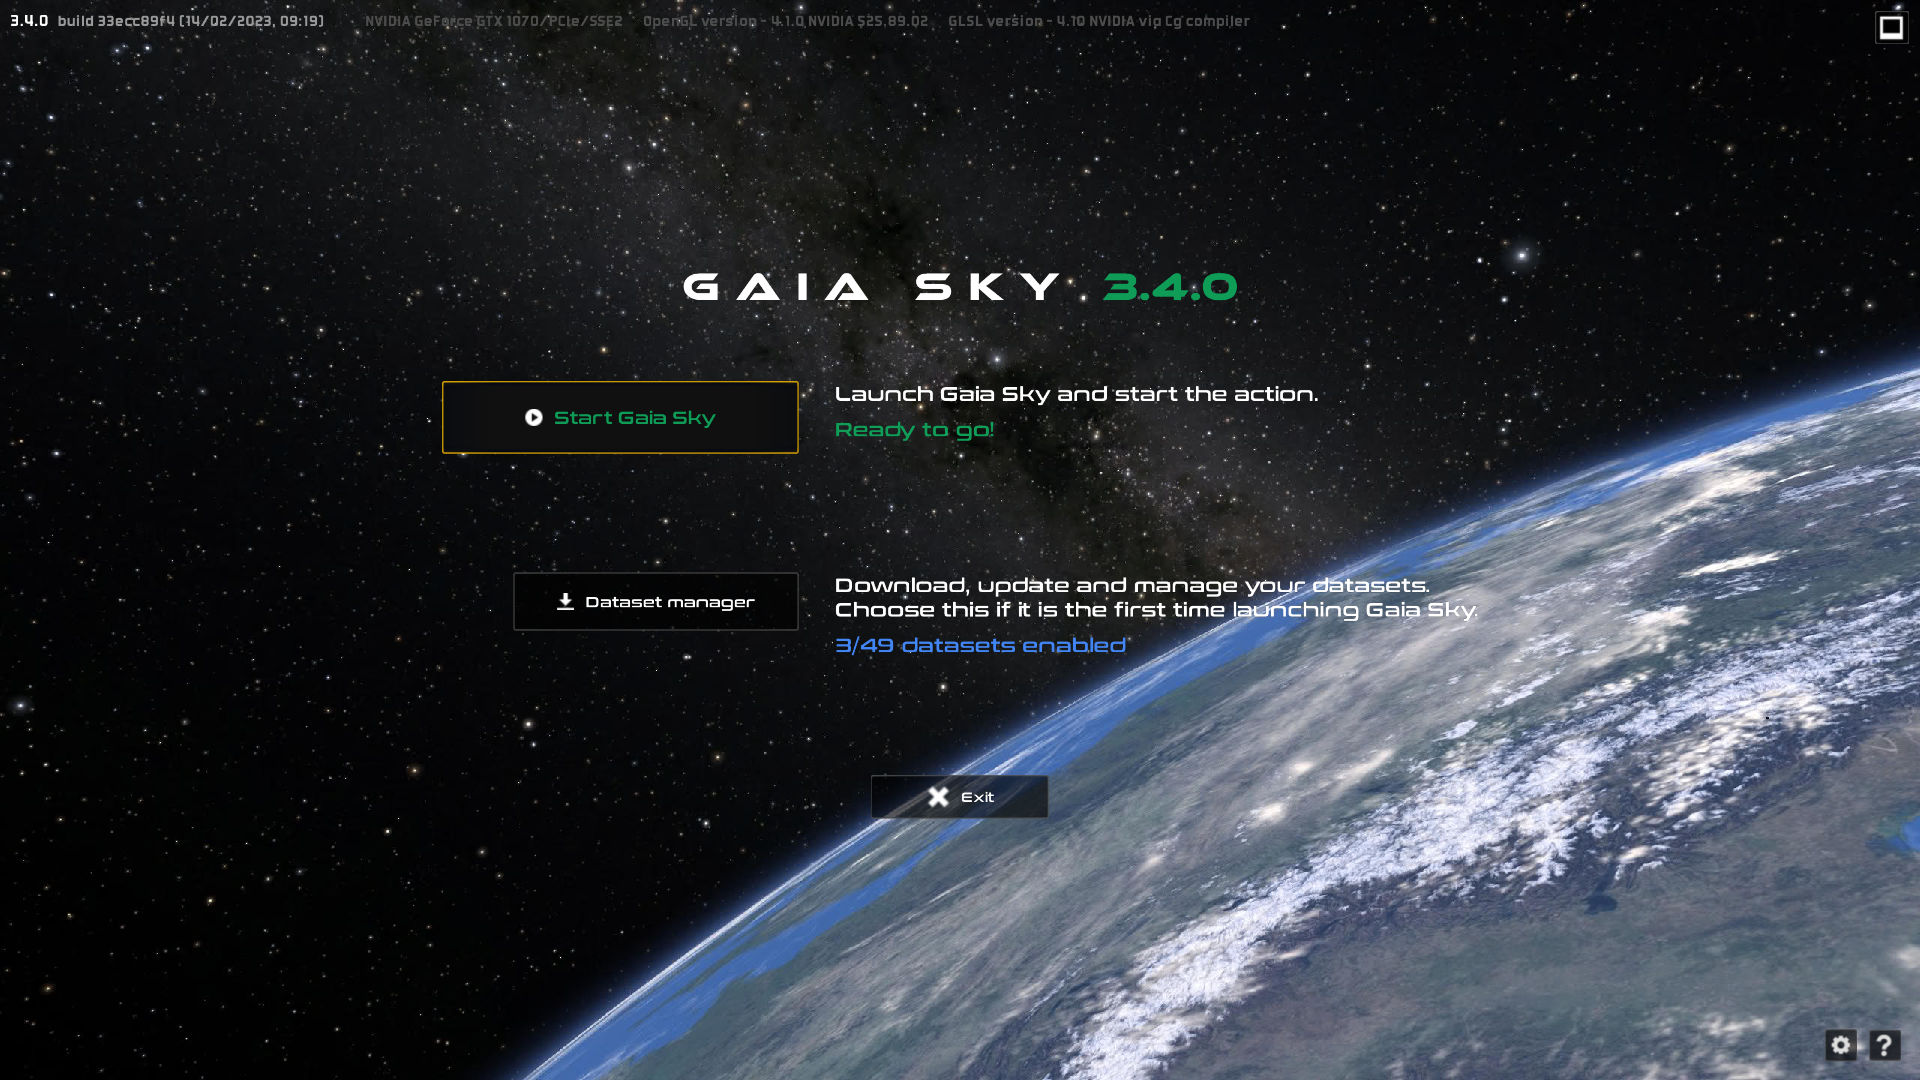 Gaia Sky welcome UI